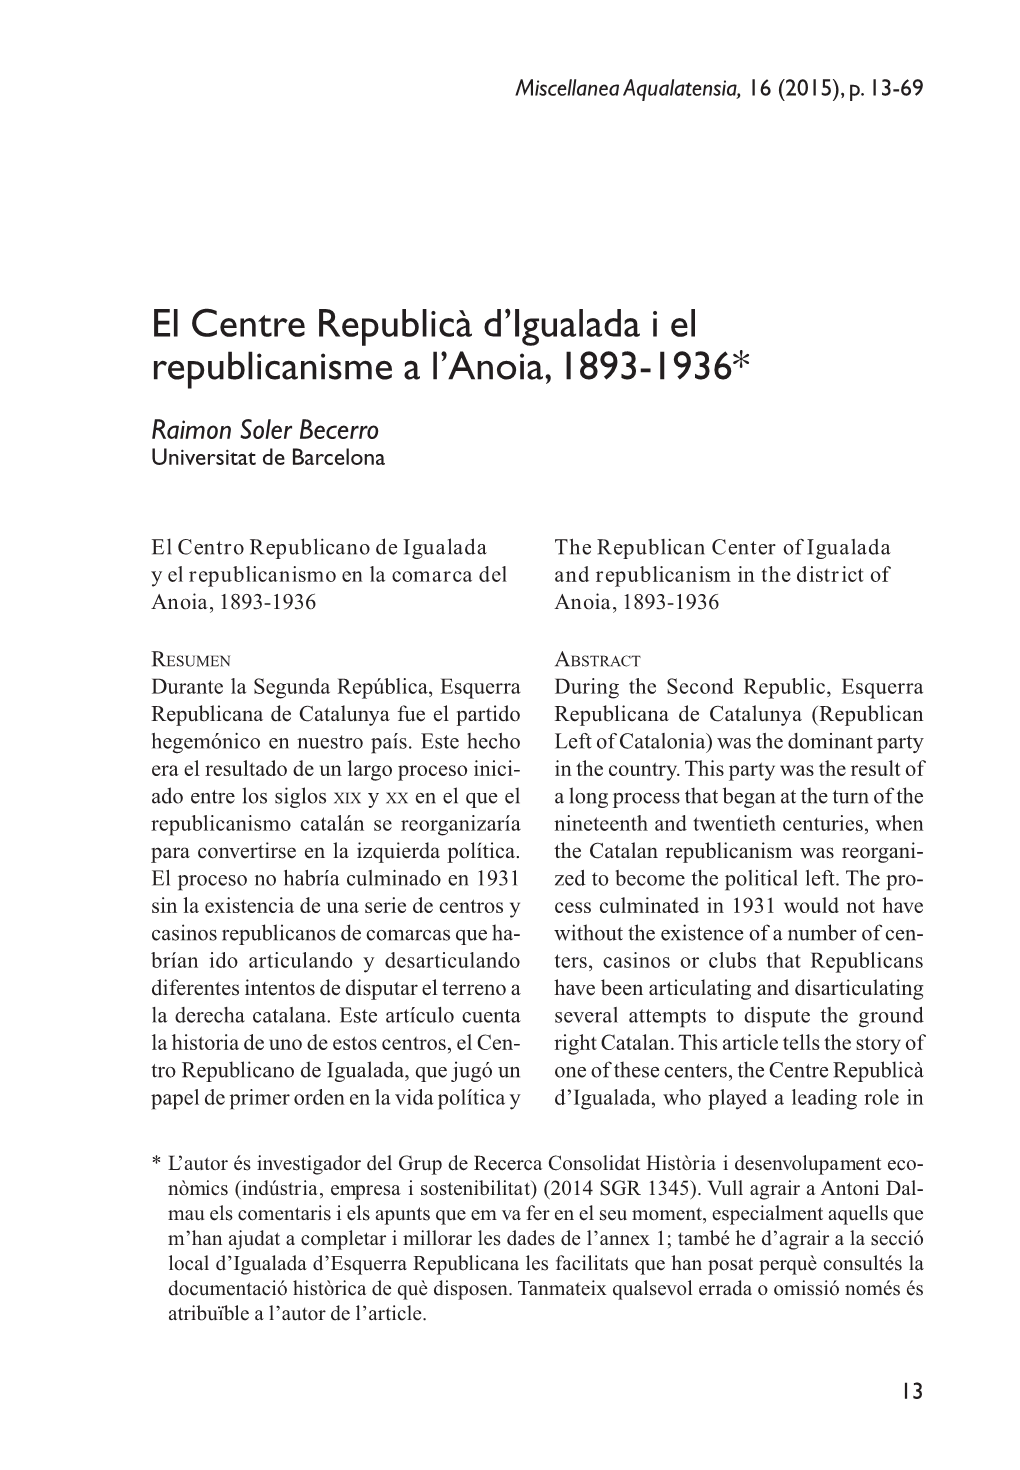 El Centre Republicà D'igualada I El Republicanisme a L'anoia, 1893-1936*